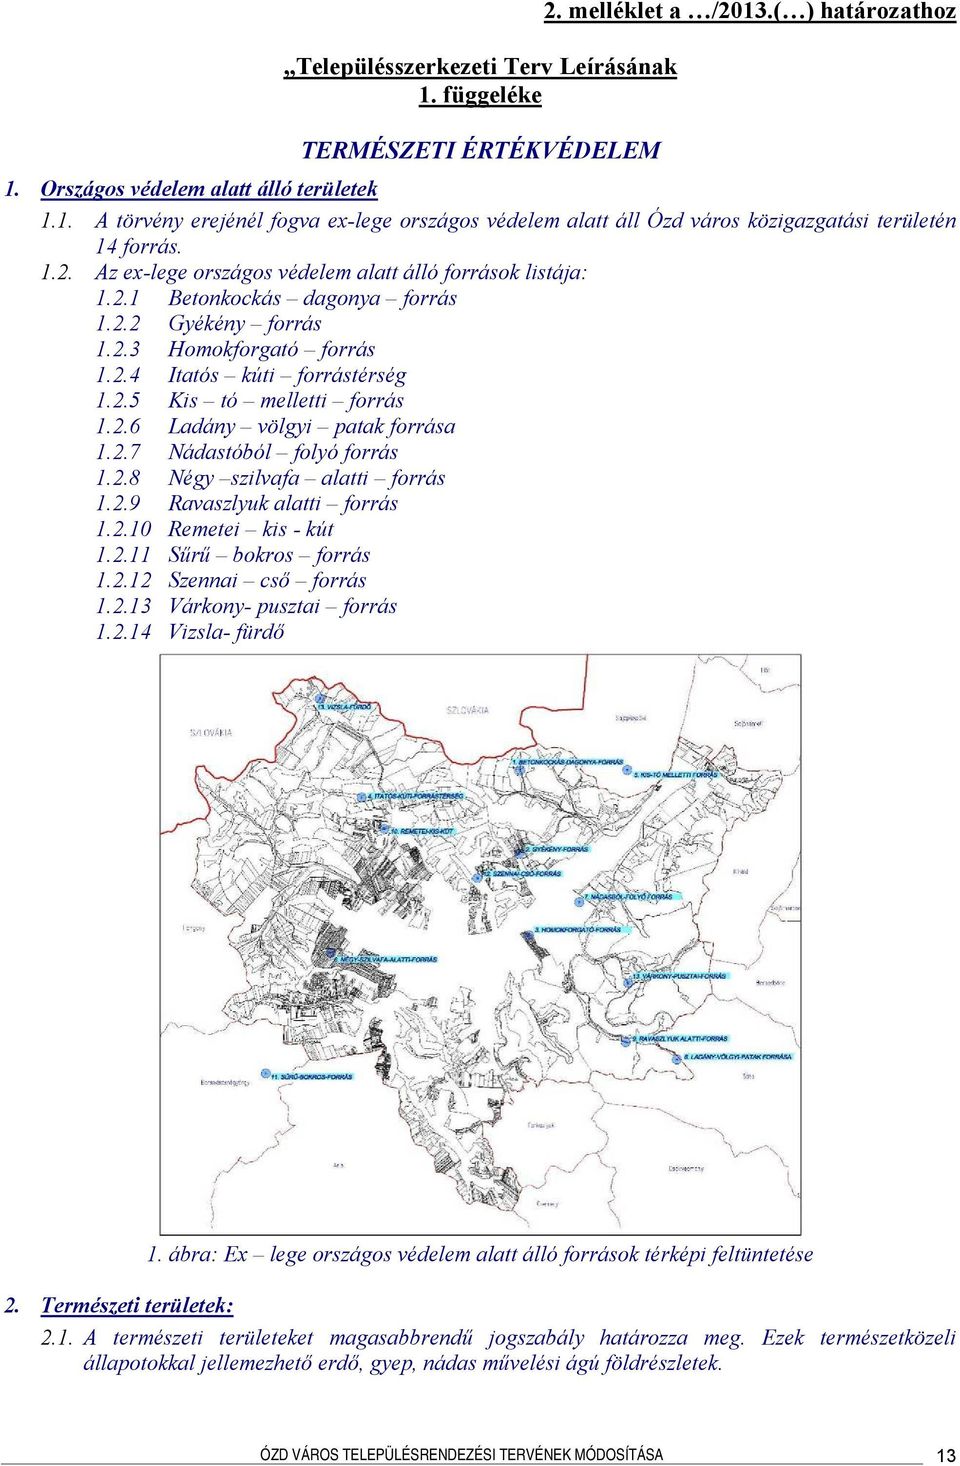 2.6 Ladány völgyi patak forrása 1.2.7 Nádastóból folyó forrás 1.2.8 Négy szilvafa alatti forrás 1.2.9 Ravaszlyuk alatti forrás 1.2.10 Remetei kis - kút 1.2.11 Sűrű bokros forrás 1.2.12 Szennai cső forrás 1.